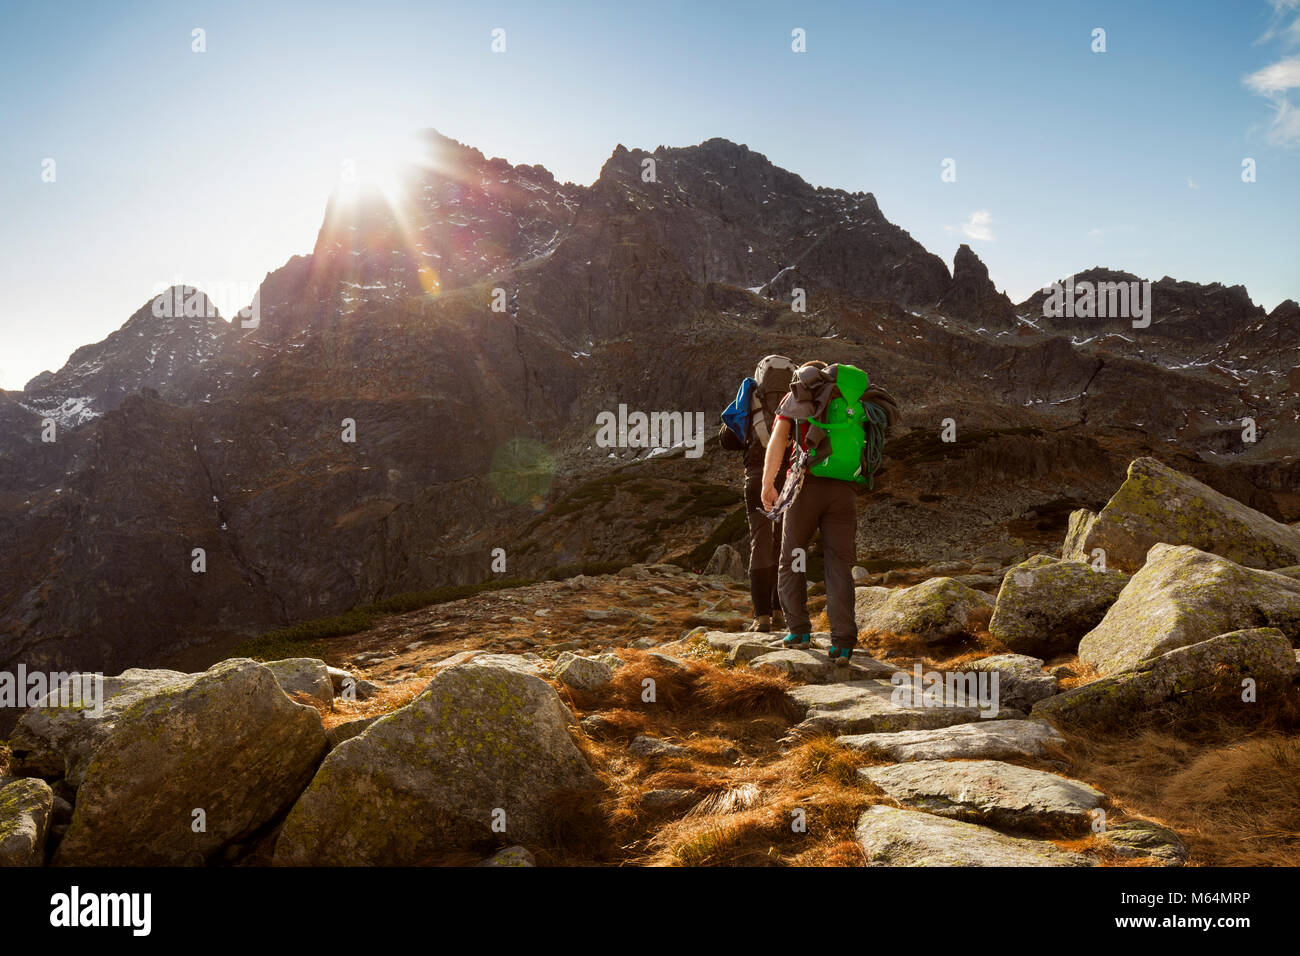 Trekking in montagna - due turisti in cammino verso una montagna Foto Stock